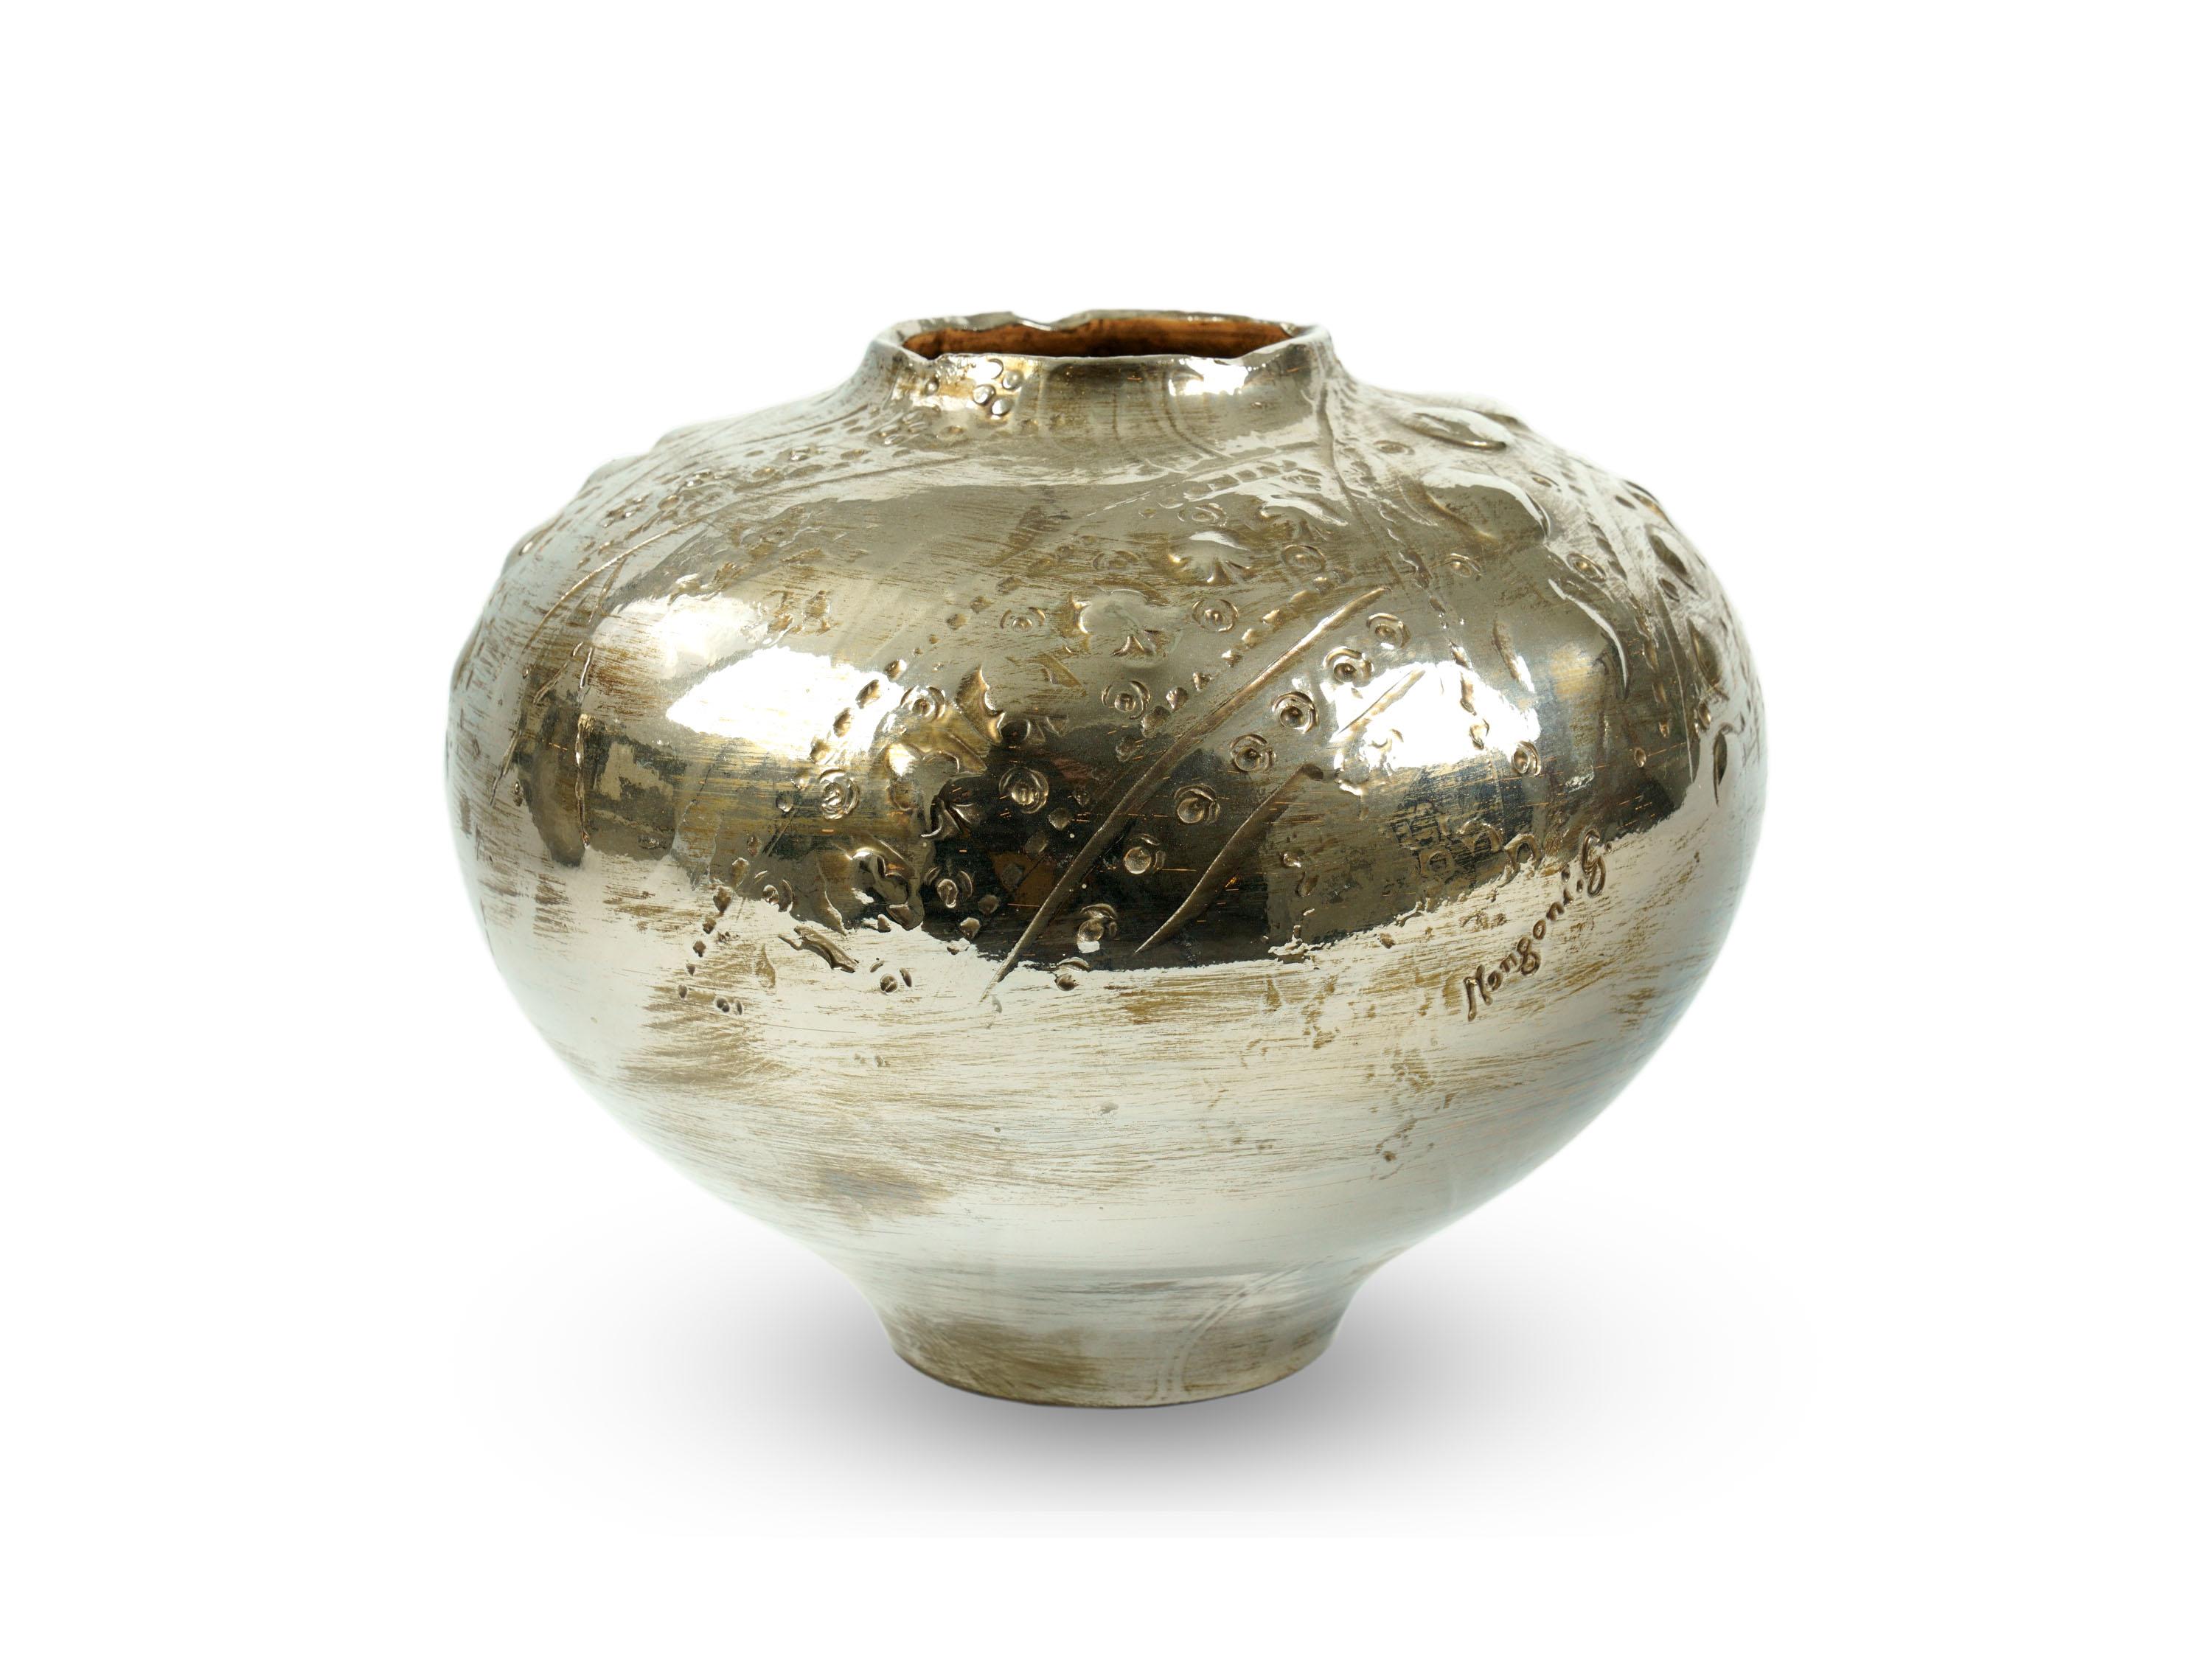 Dekorative Keramikvase, handgefertigt in Italien und mit Platinglanz verziert. Der Glanzprozess erfordert drei Brennvorgänge der Vase. Abmessungen: T 25 cm, H 31 cm.
Die Vase ist inspiriert von einem der charakteristischsten Produkte der